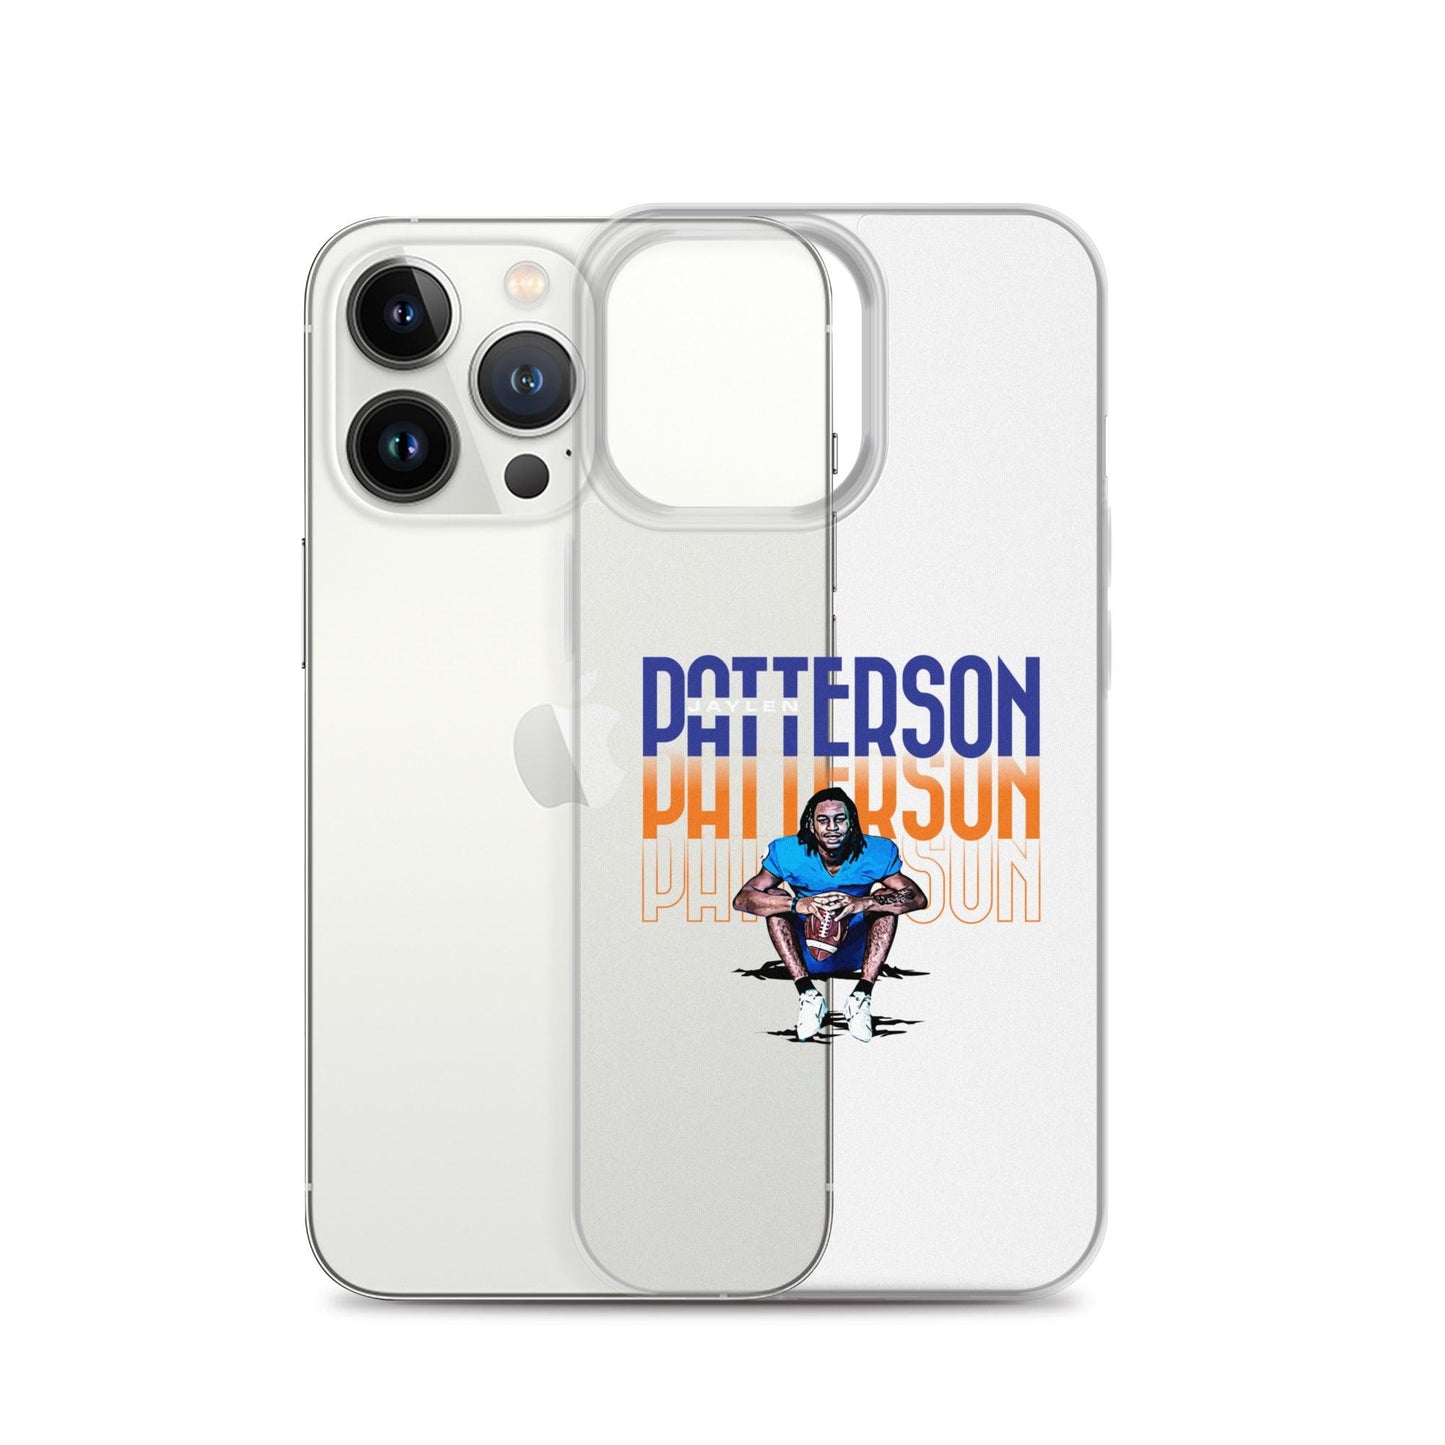 Jaylen Patterson "Gameday" iPhone® - Fan Arch